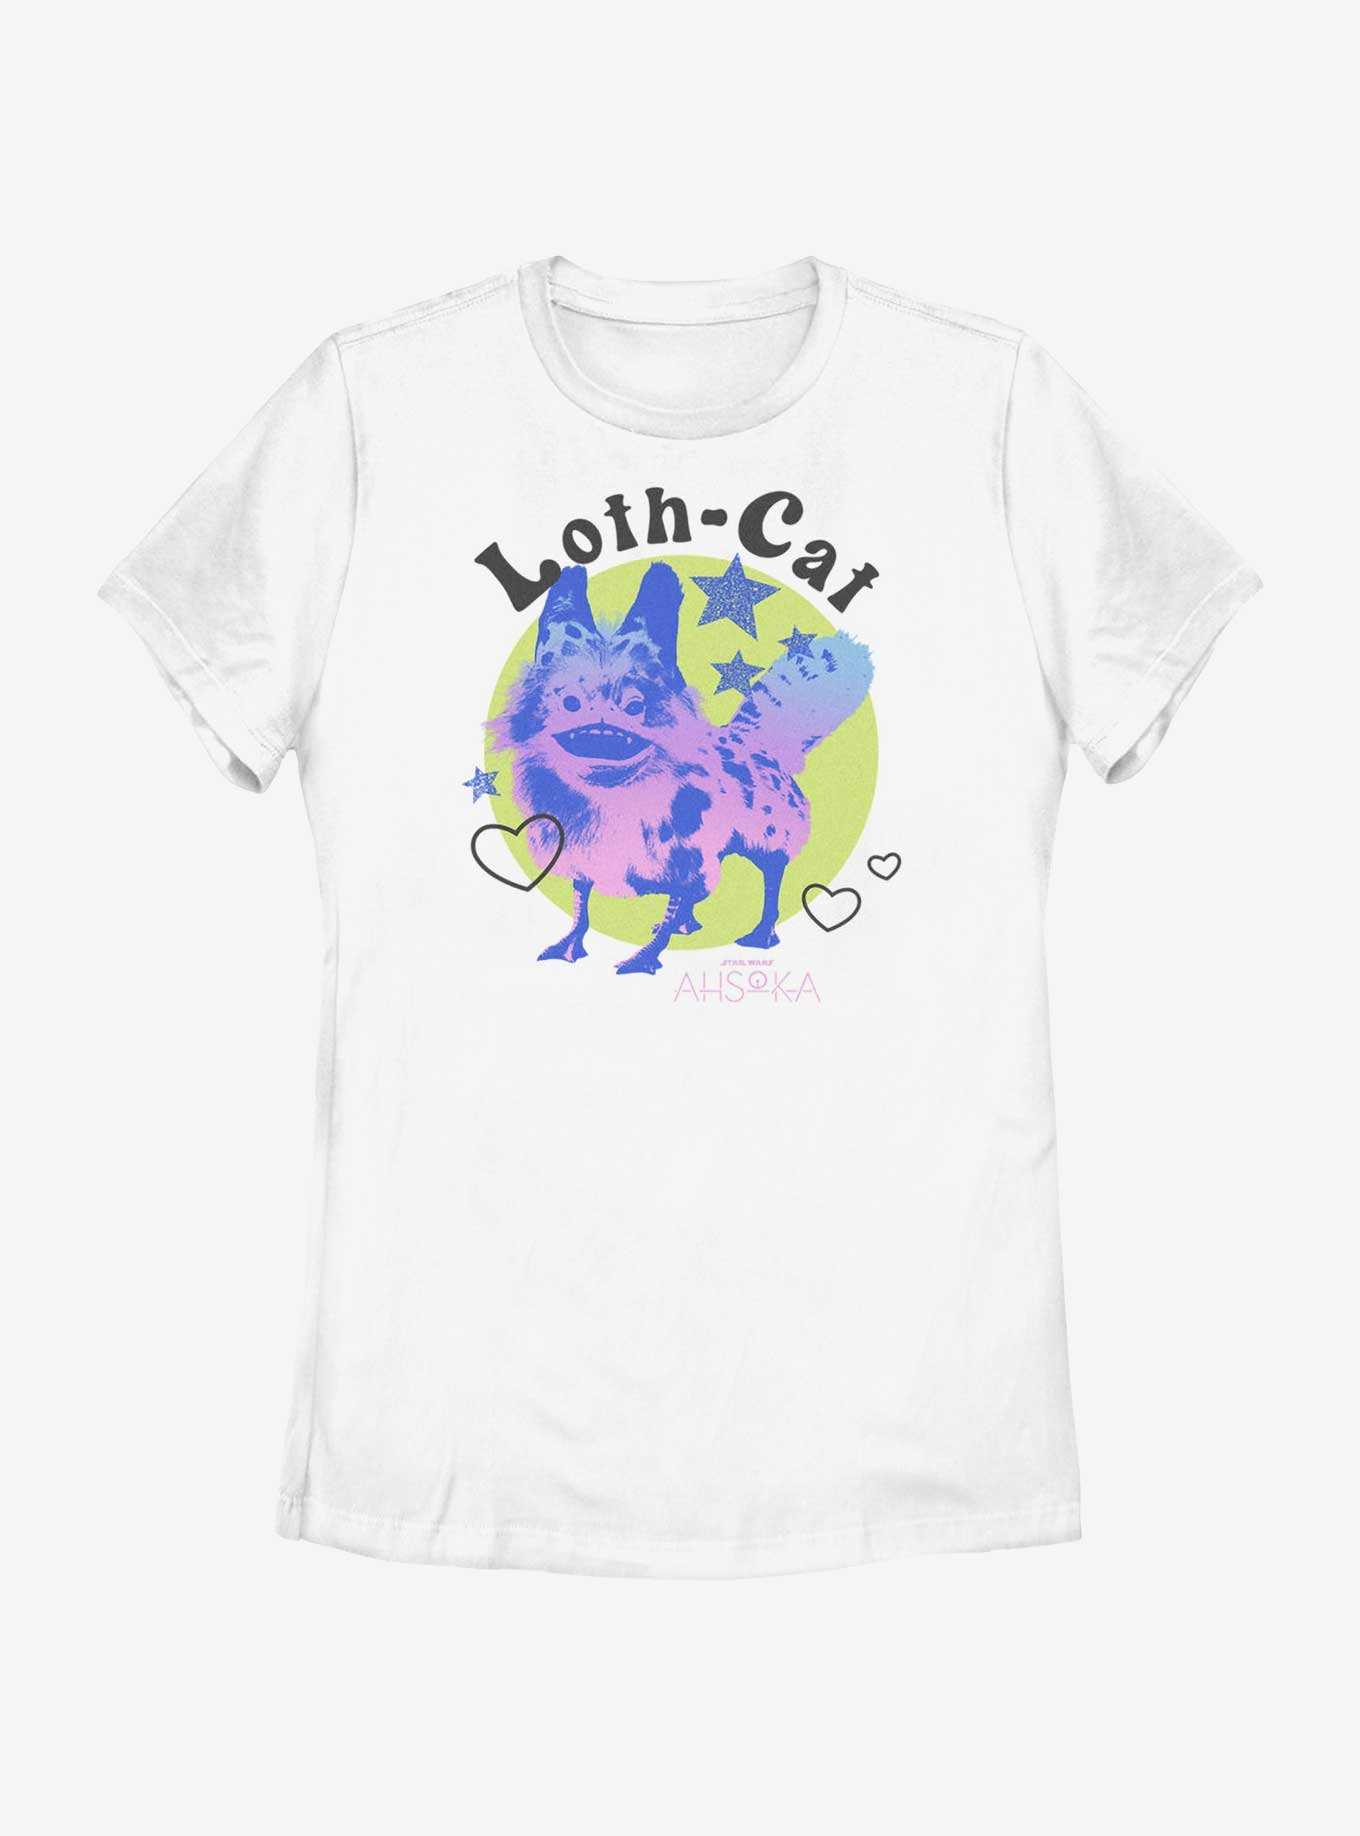 Star Wars Ahsoka Loth-Cat Cuteness Womens T-Shirt, , hi-res